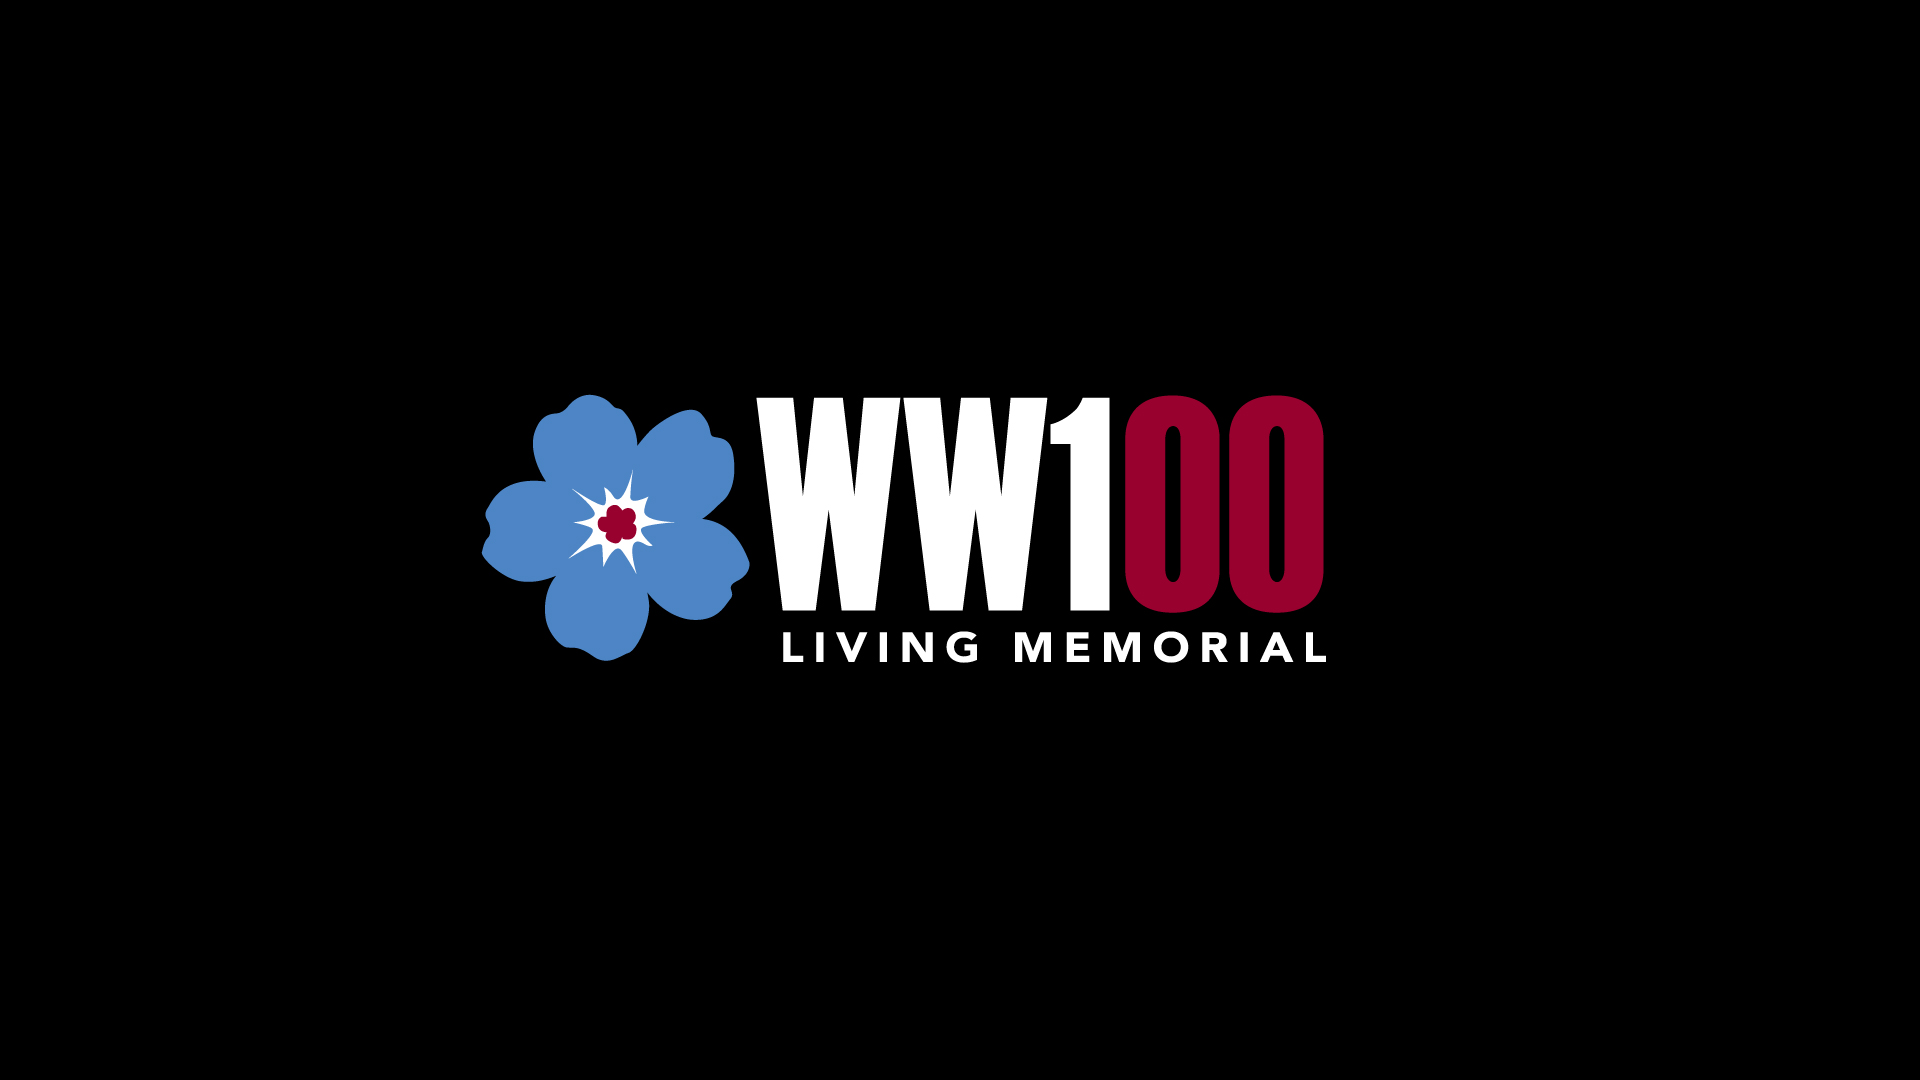 Memorial has undertaken a number of activities as part of its WW100 Commemoration Program.